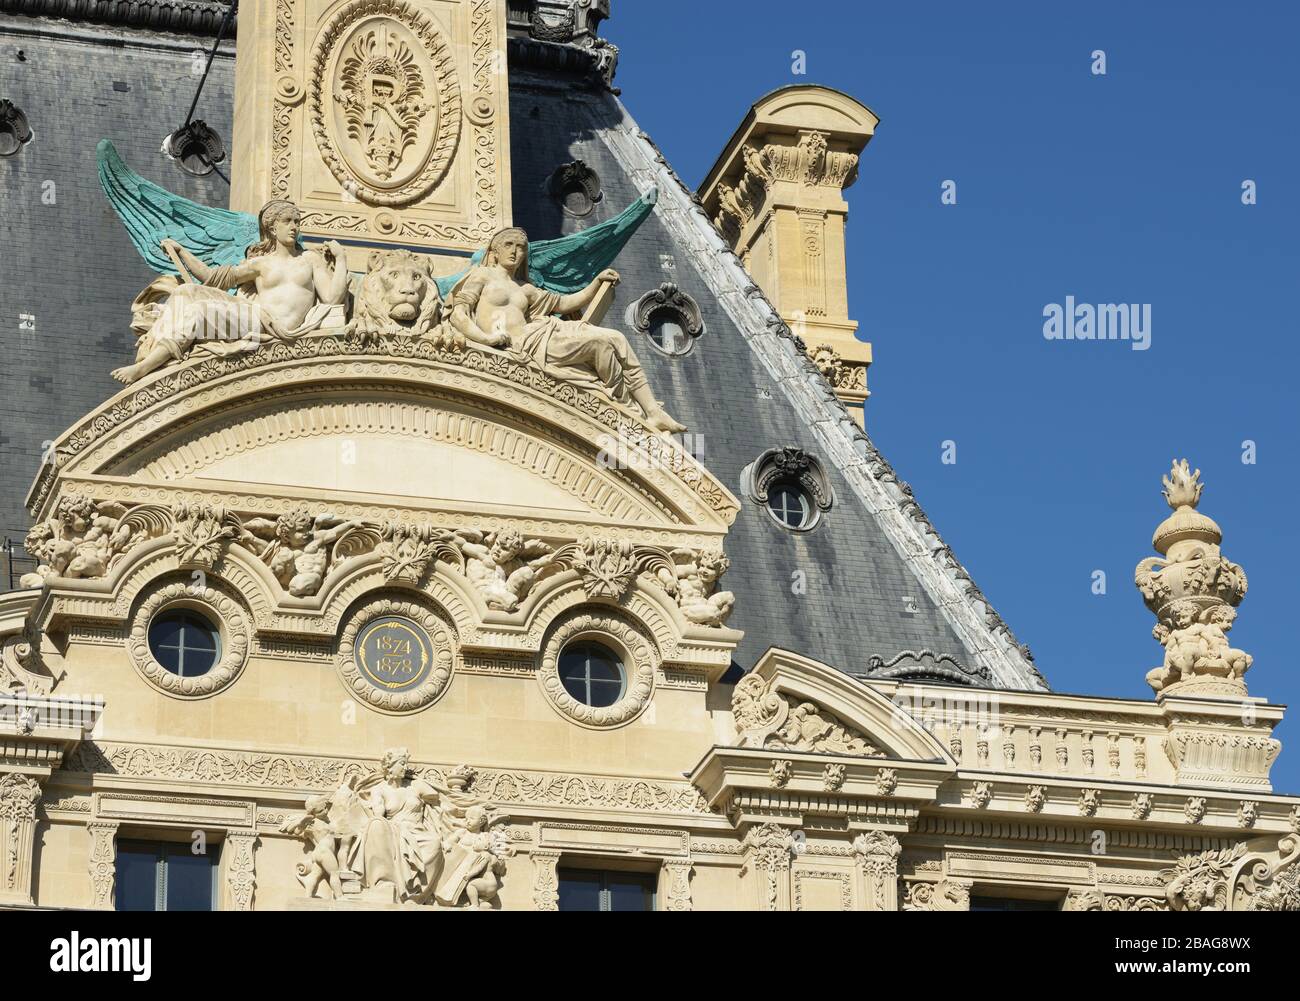 Details of the Louvre building (Pavillon de Marsan), Paris, France Stock Photo